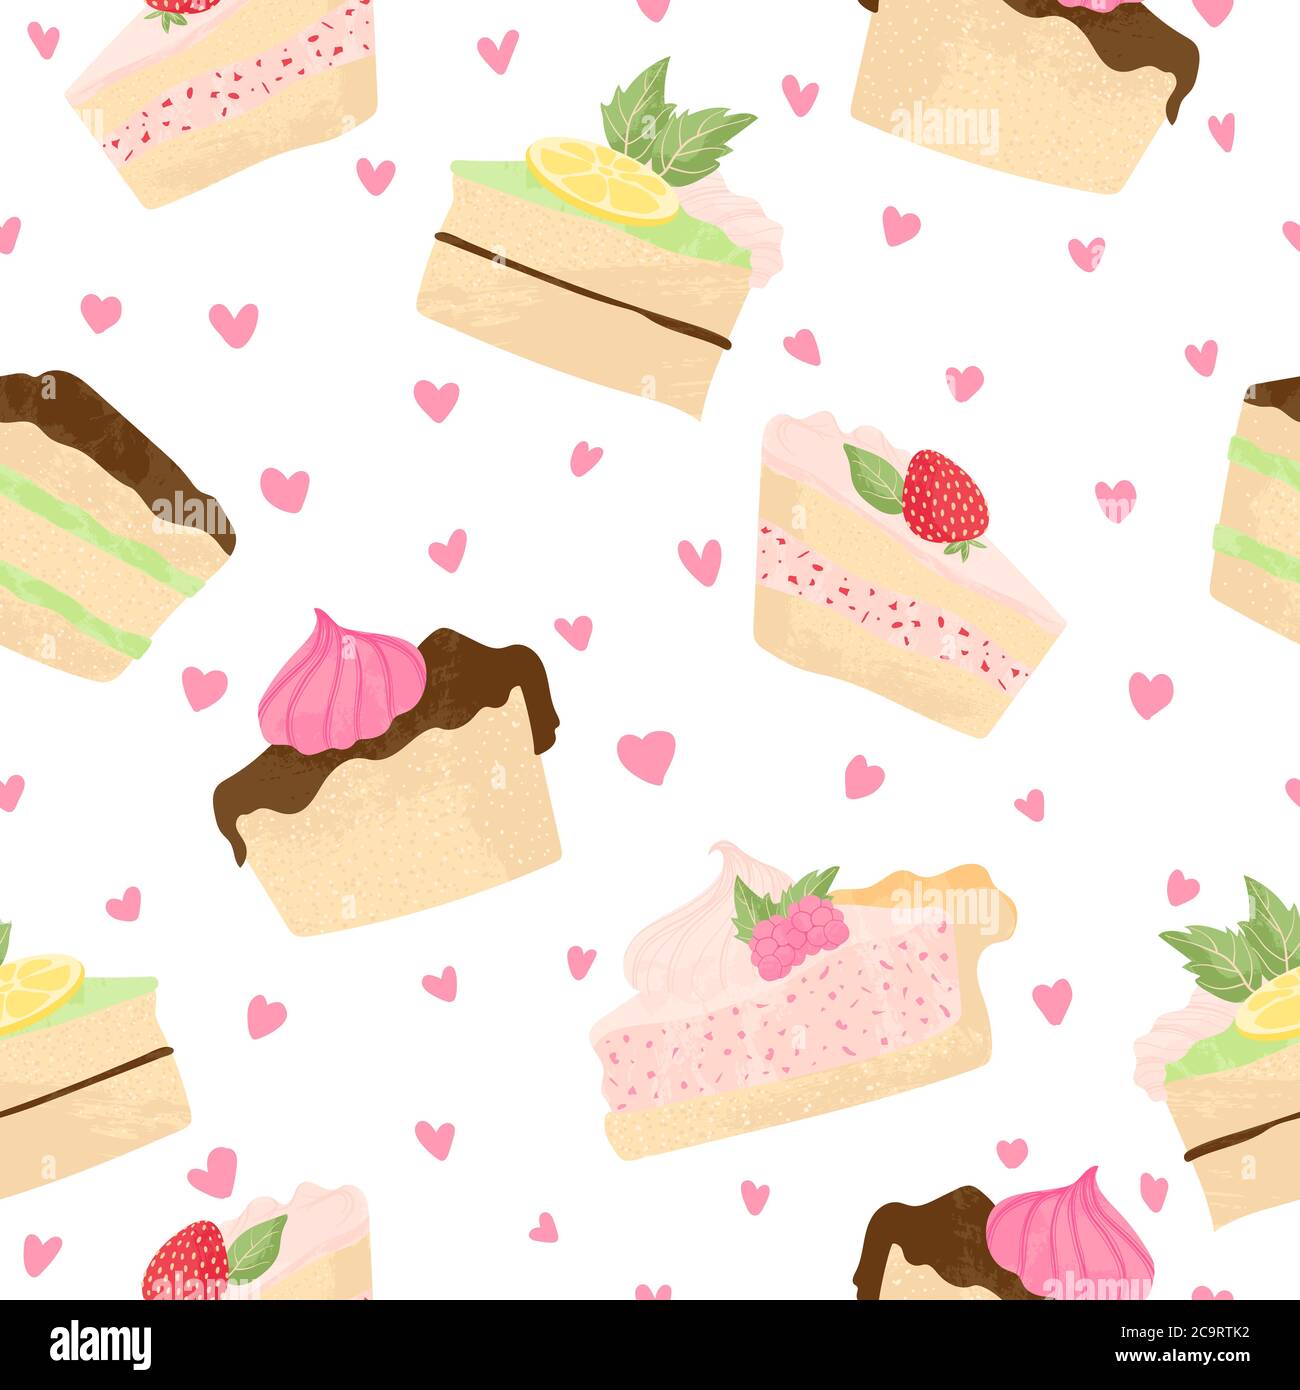 Verschiedene Stück Kuchen und Käsekuchen Vektor nahtlose Muster in flachen Cartoons Stil. Happy Birthday Kuchen Hintergrund mit Früchten und Beeren. Süßes Colo Stock Vektor